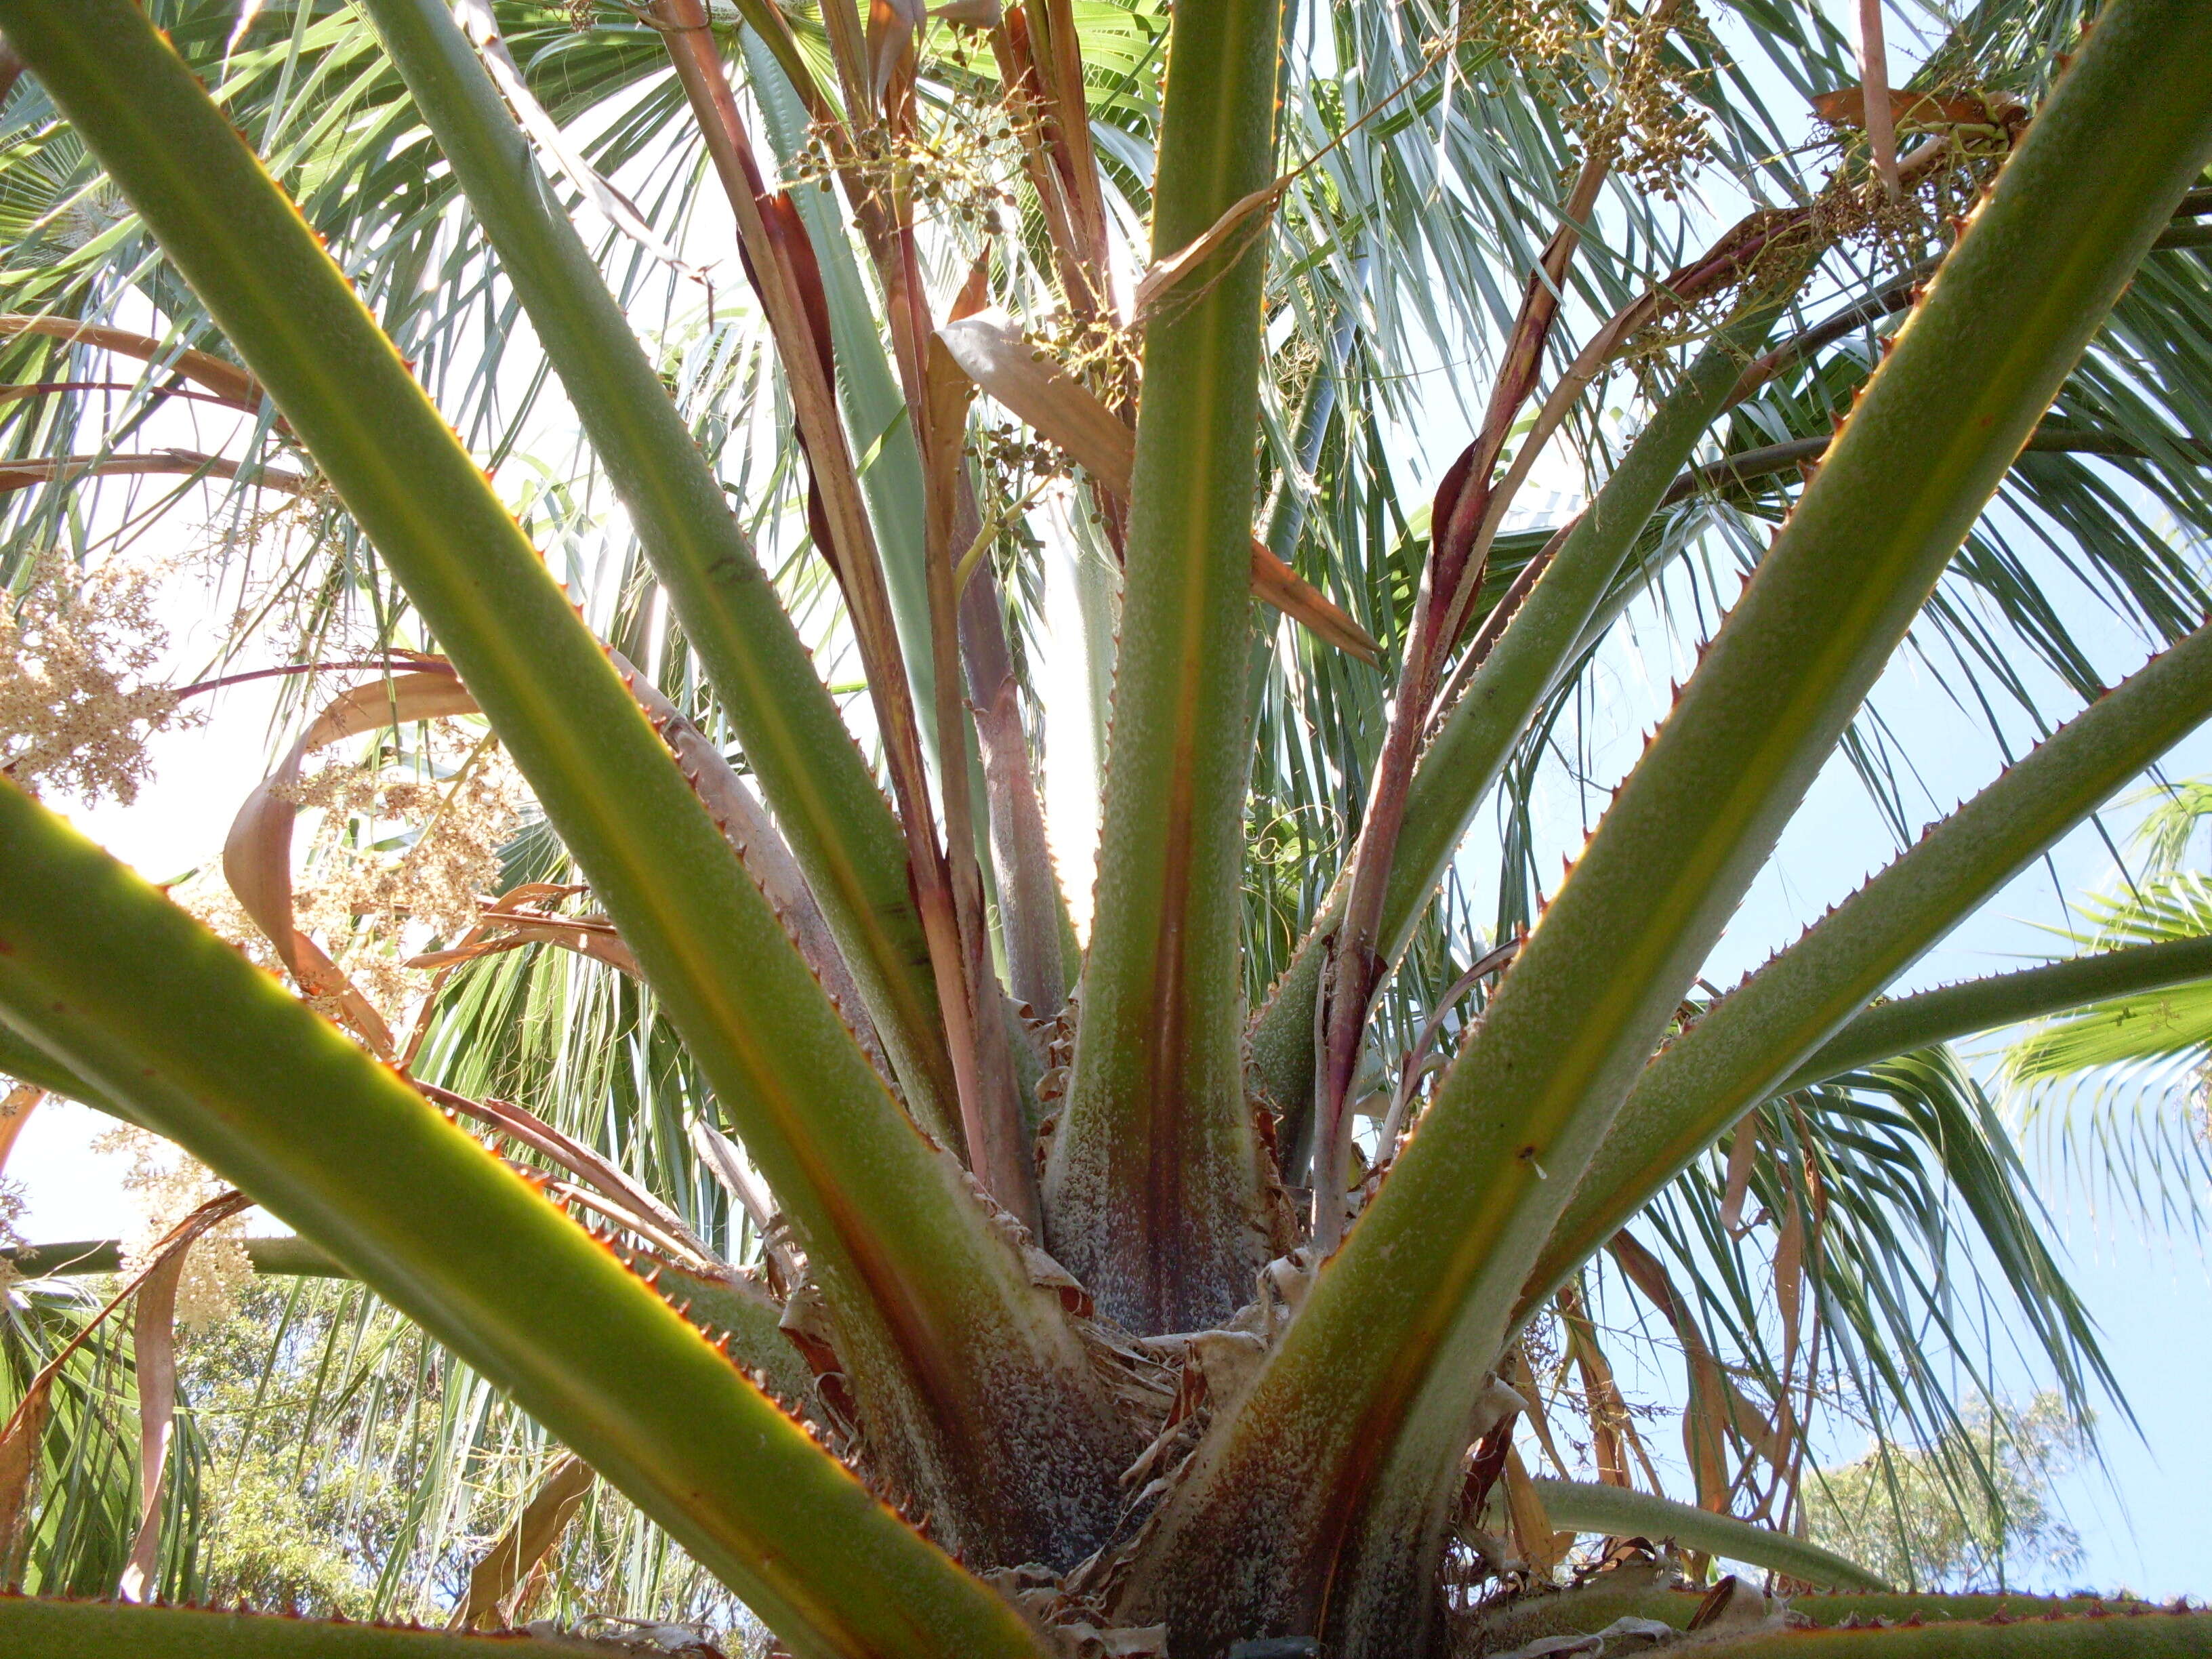 Image of fan palm